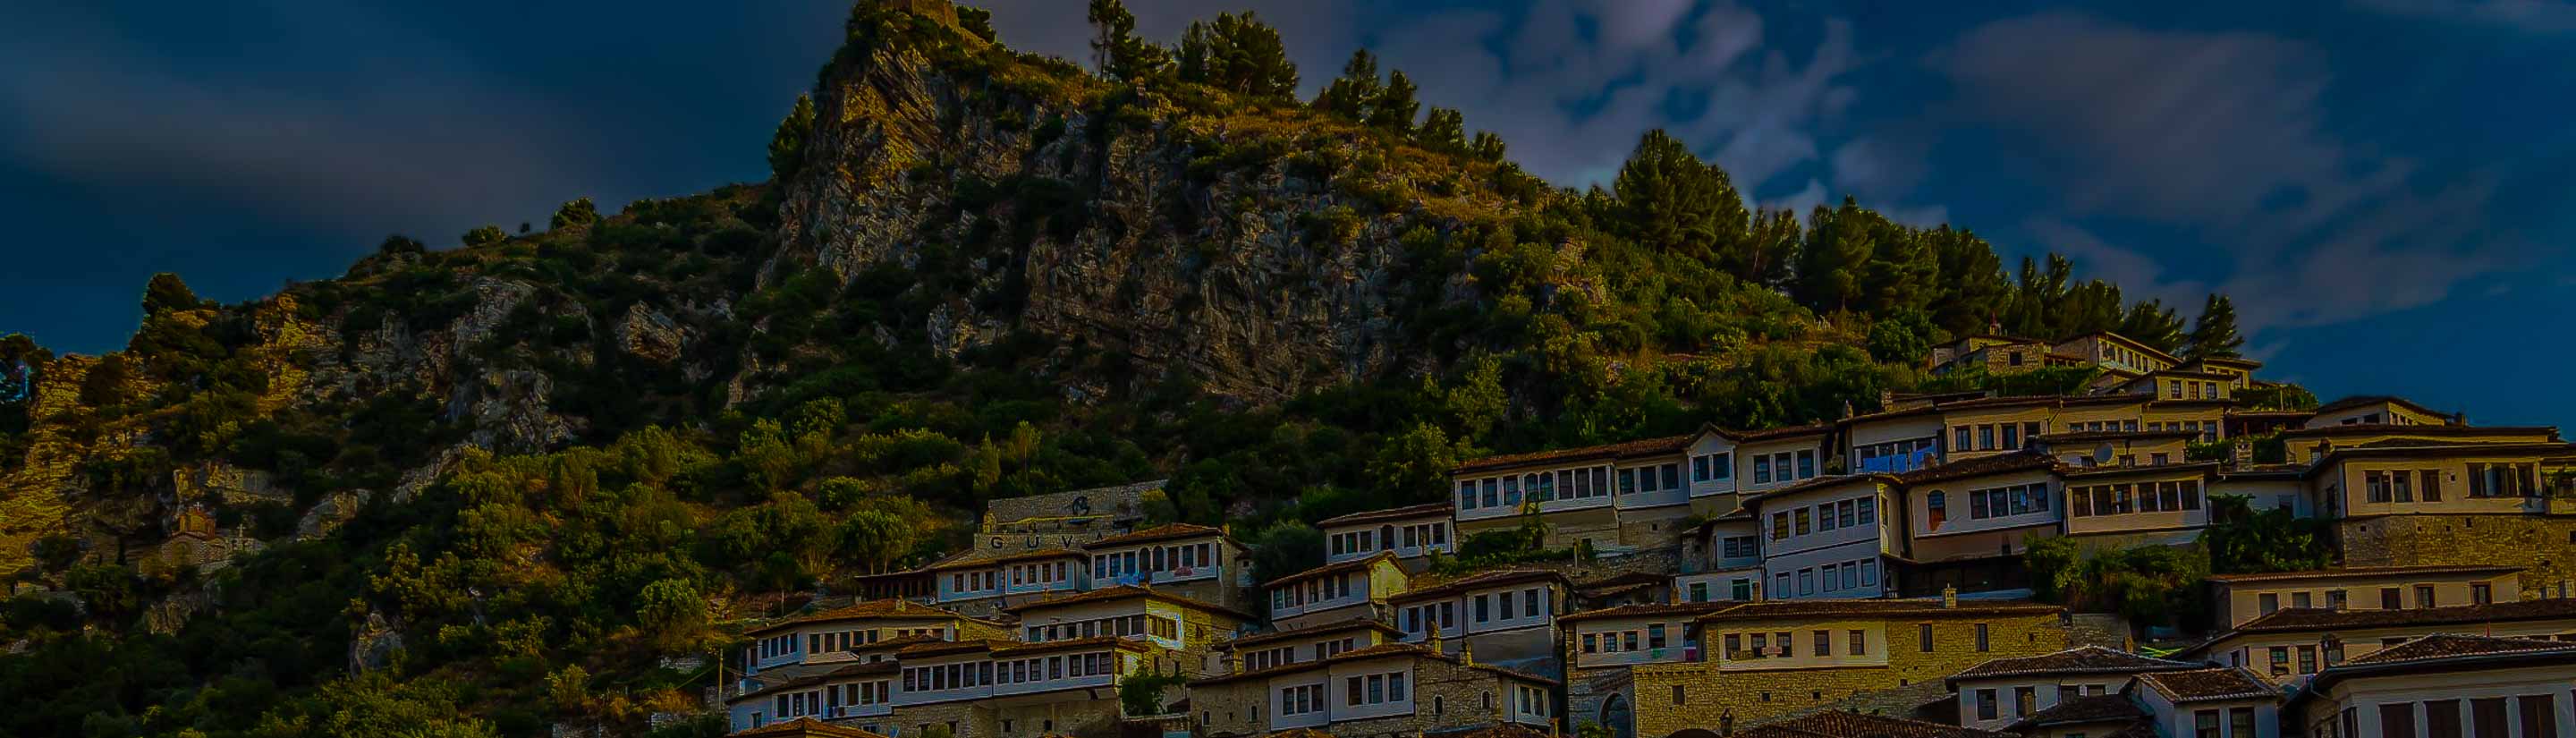 Stadt Berat am Osum Fluss in Albanien auf Balkan Reise.